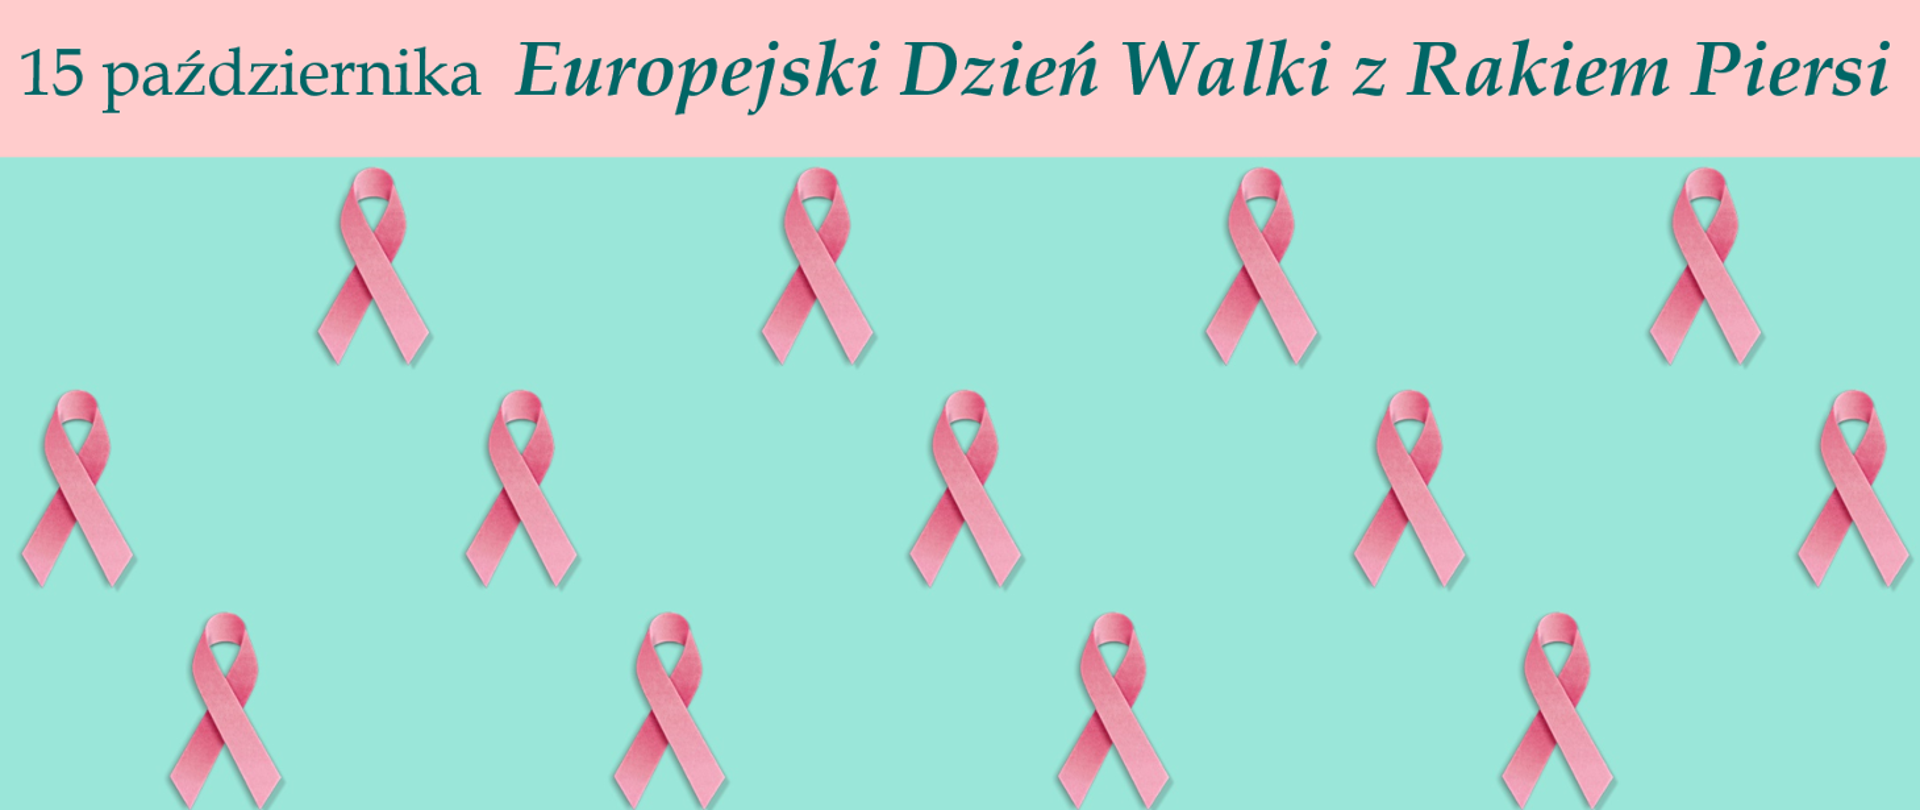 15 października Europejski Dzień Walki z Rakiem Piersi.